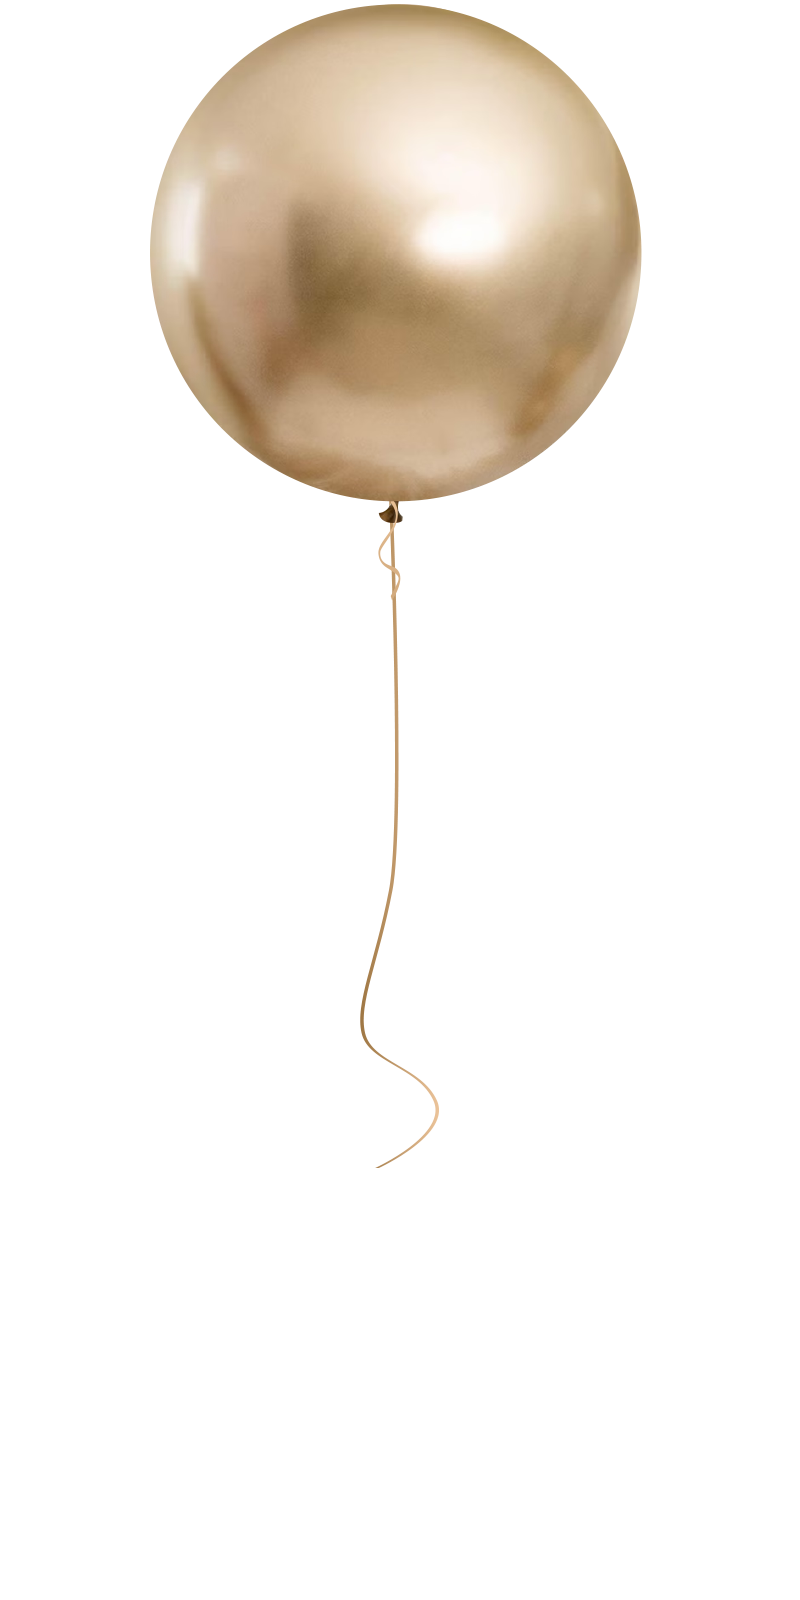 Loose Helium Balloon – 17″ round - The Balloon Crew - Sydney